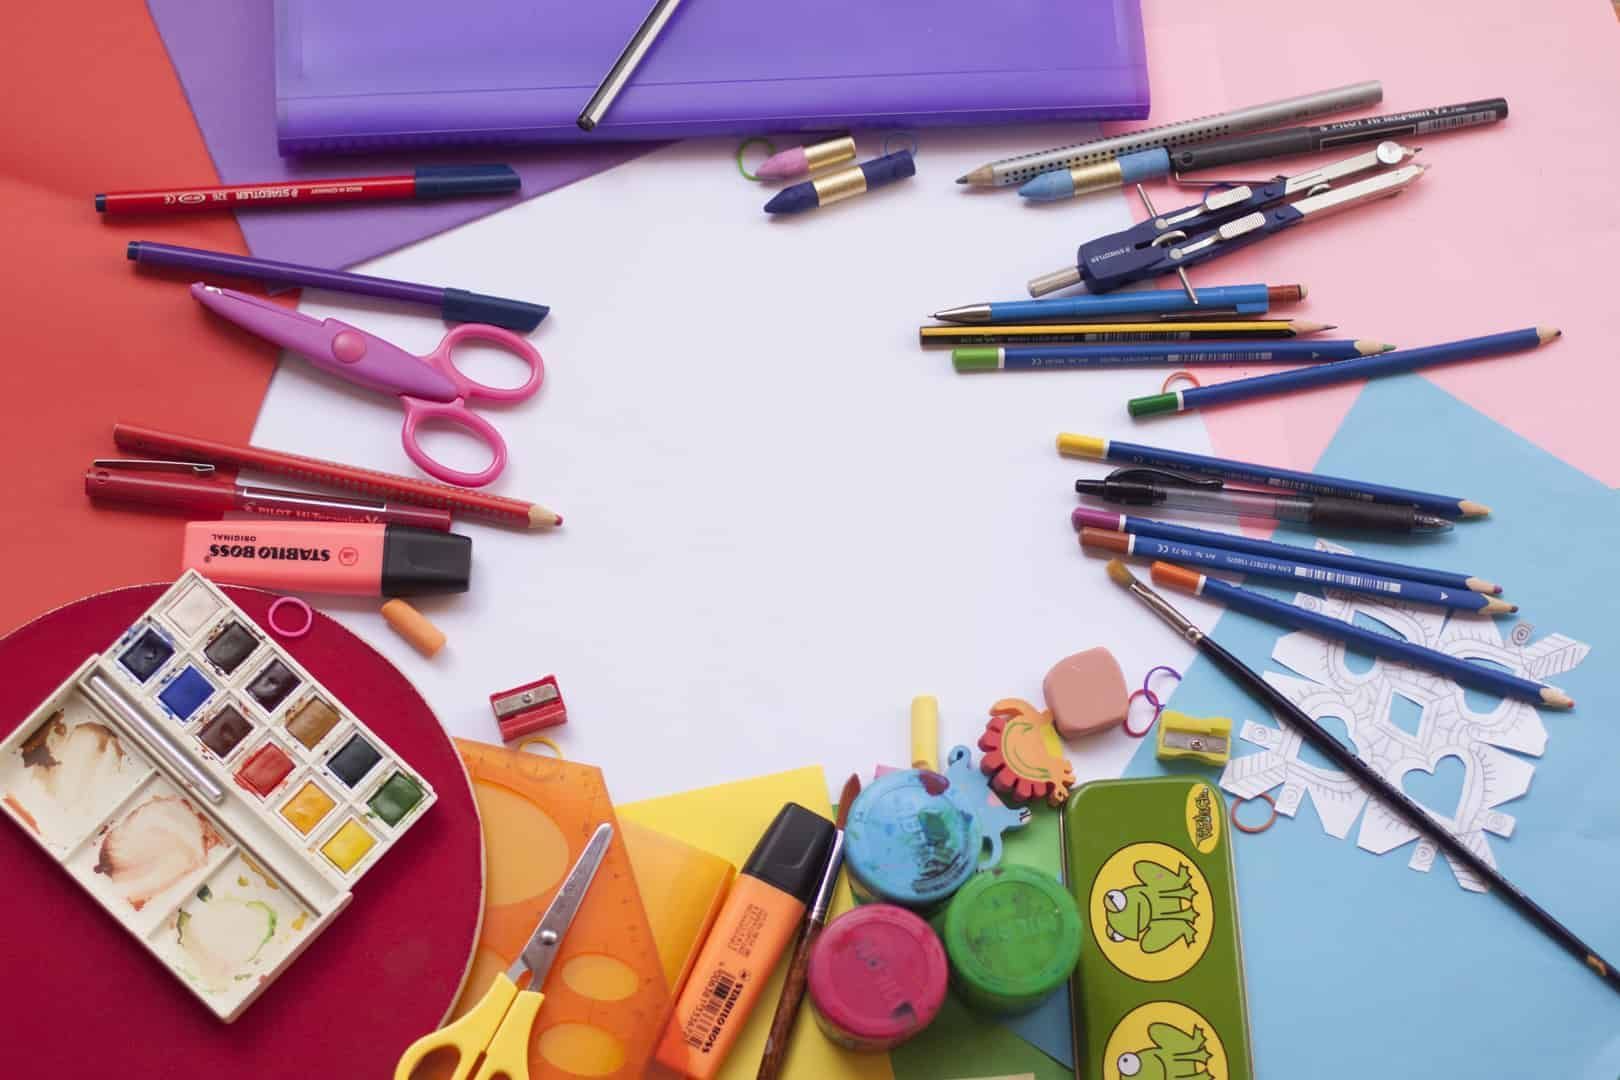 Foto mostra canetas, tesouras e outros materiais escolares dispostos em cima de uma mesa colorida. No novo normal, as papelarias online são uma ótima alternativa para as famílias que querem comprar sem sair de casa.